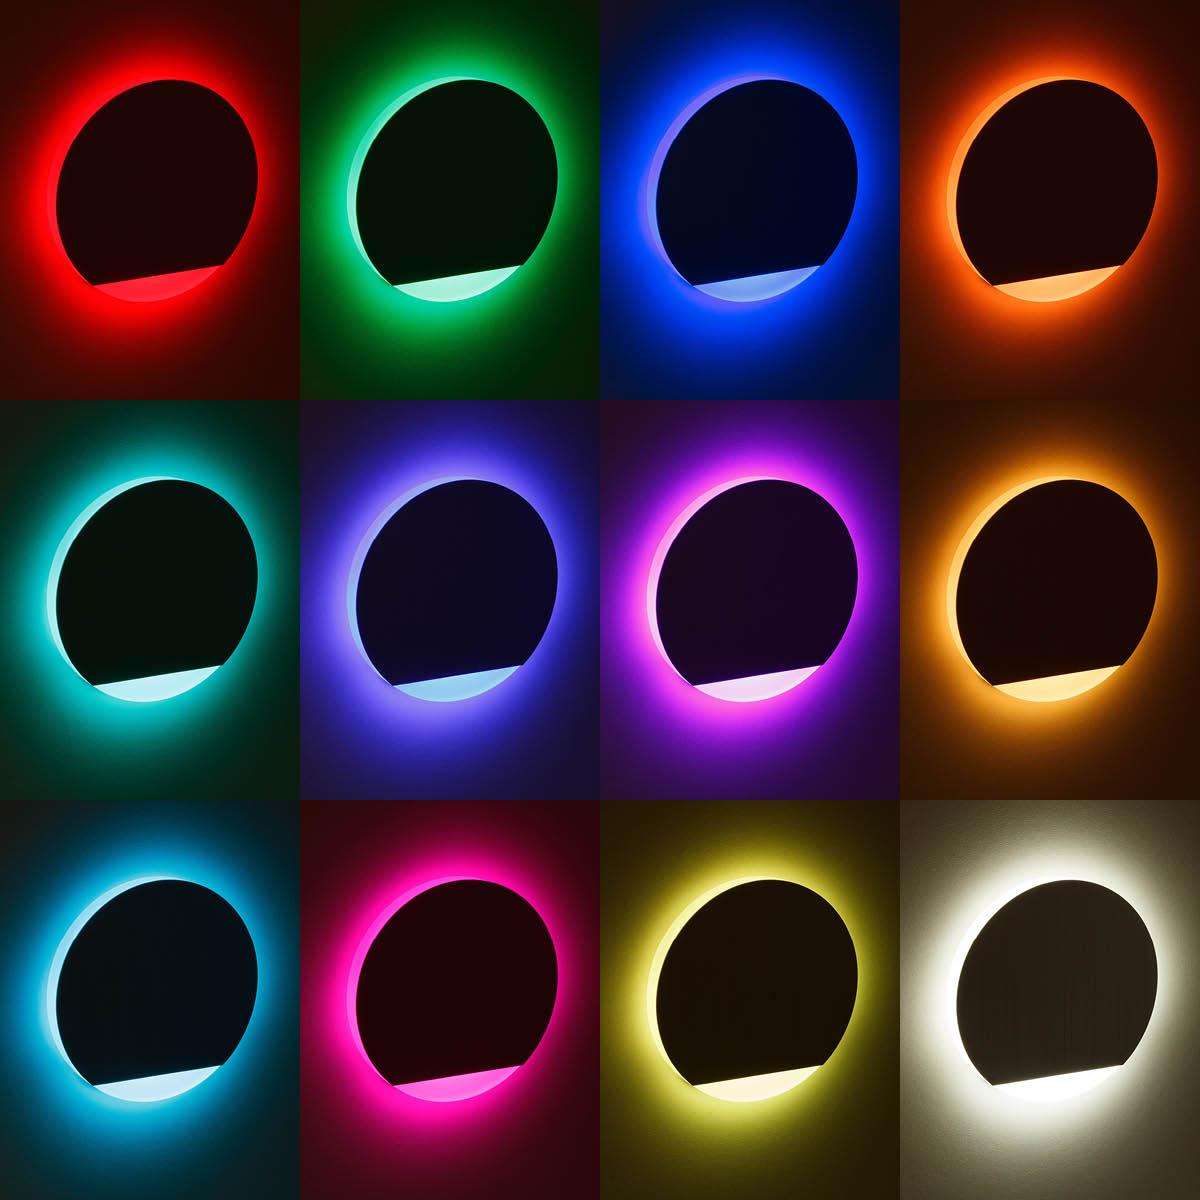 LED Treppenleuchte IP44 Alu-gebürstet - Lichtfarbe: RGB Warmweiß 3W - Lichtaustritt: Orbis